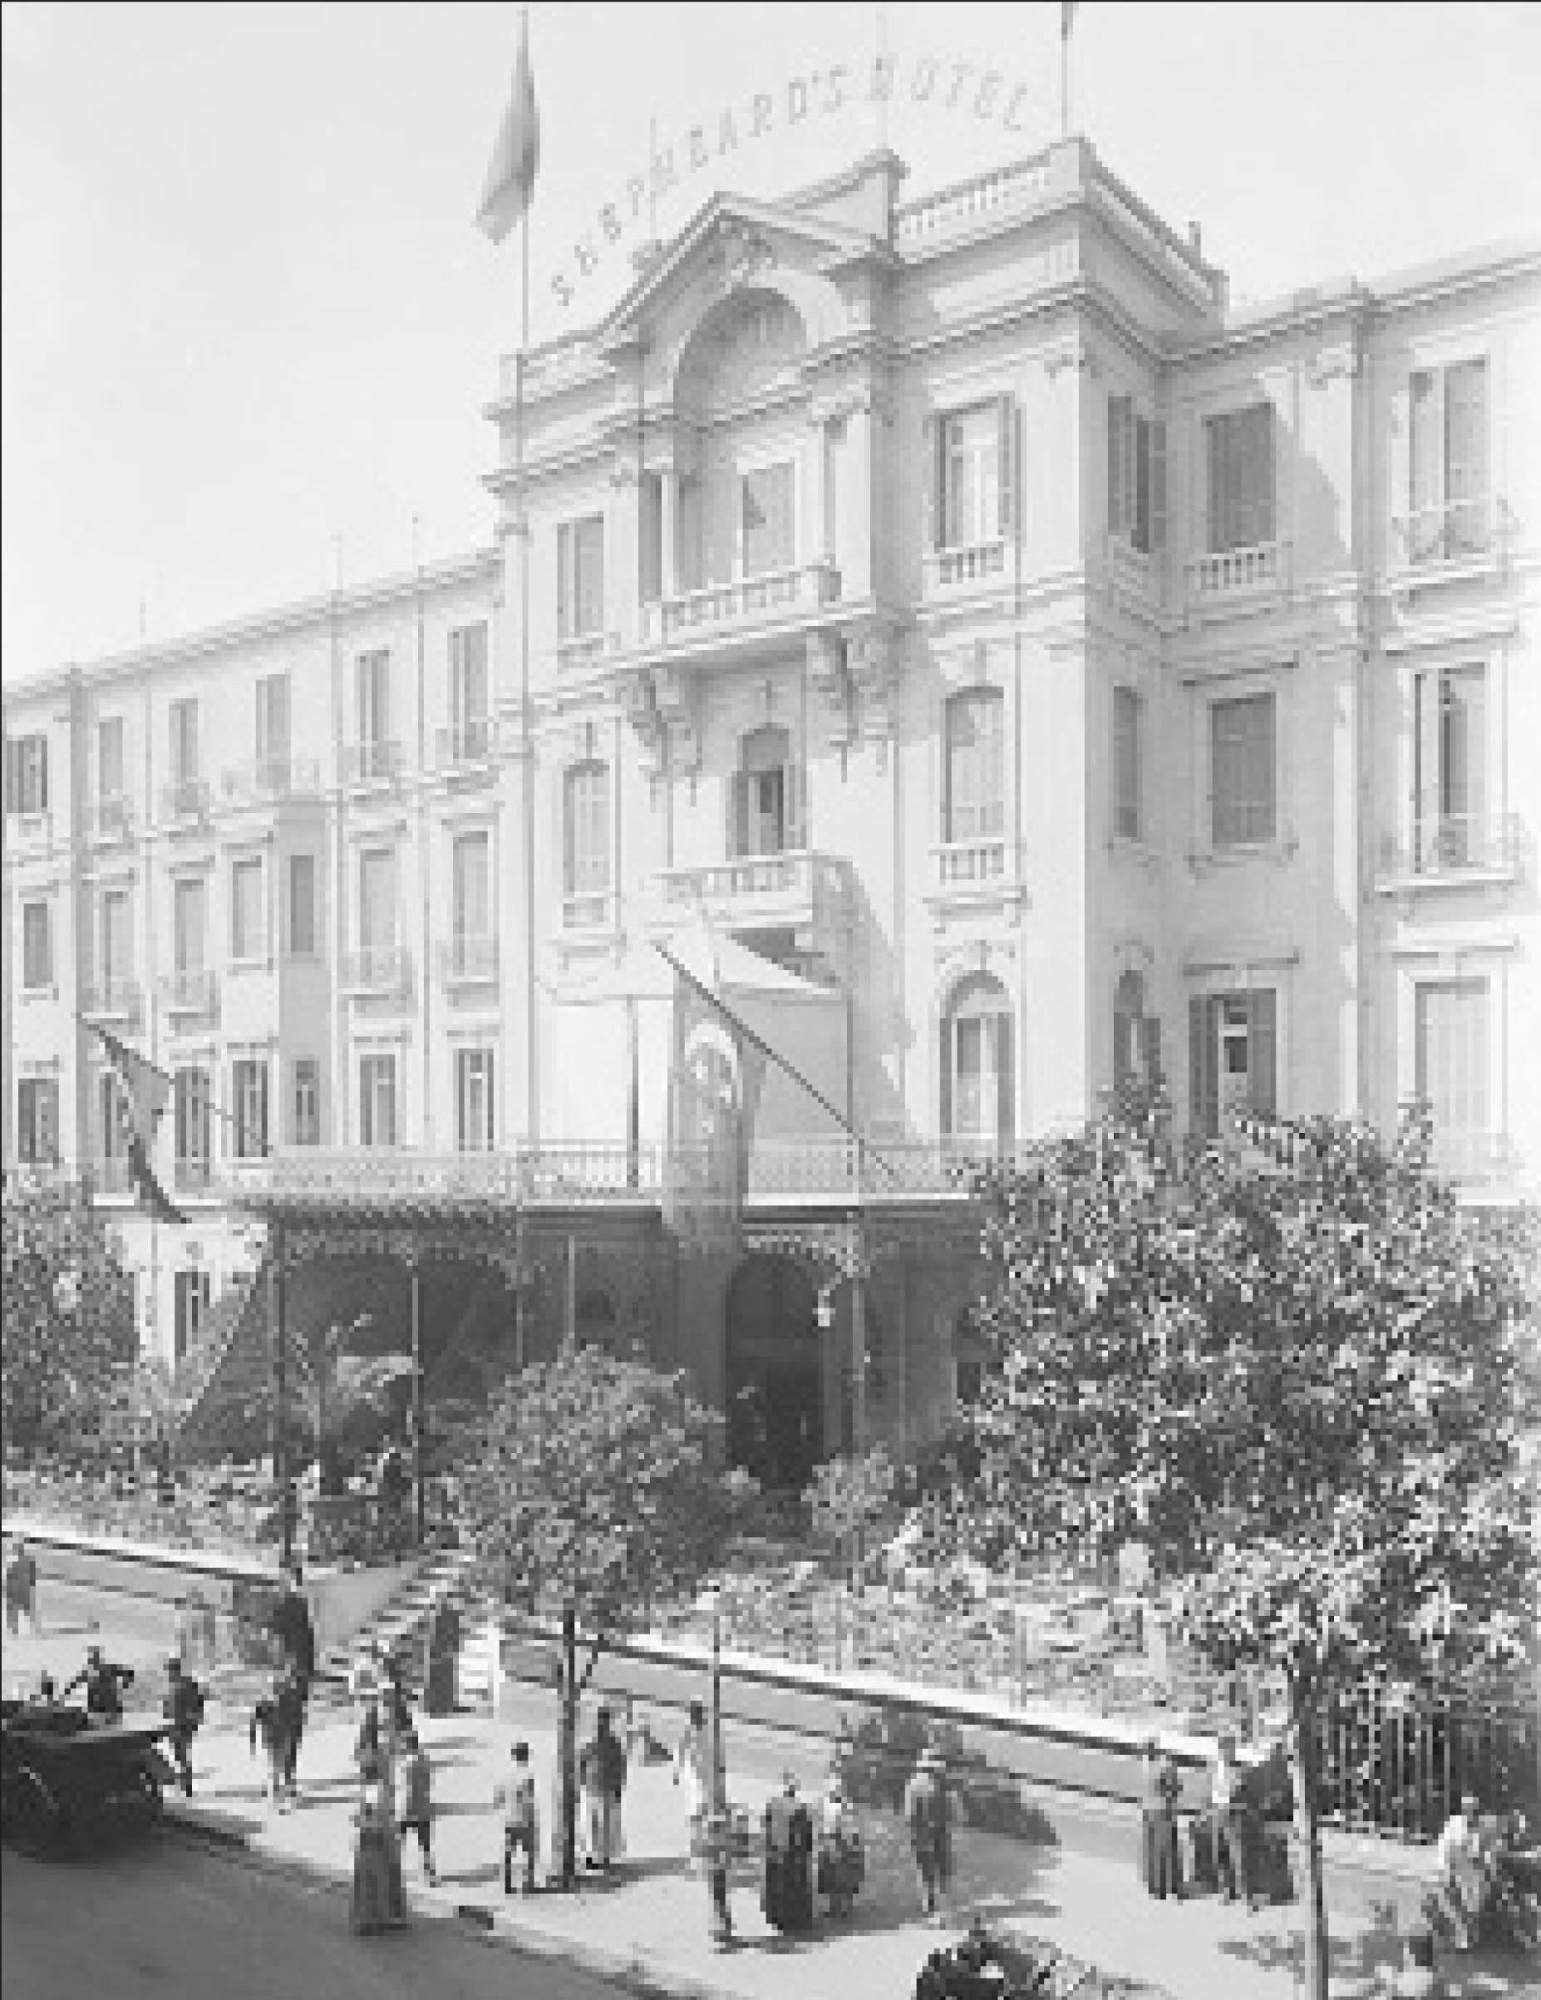 فندق شبرد بالقاهرة فى الثلاثينيات